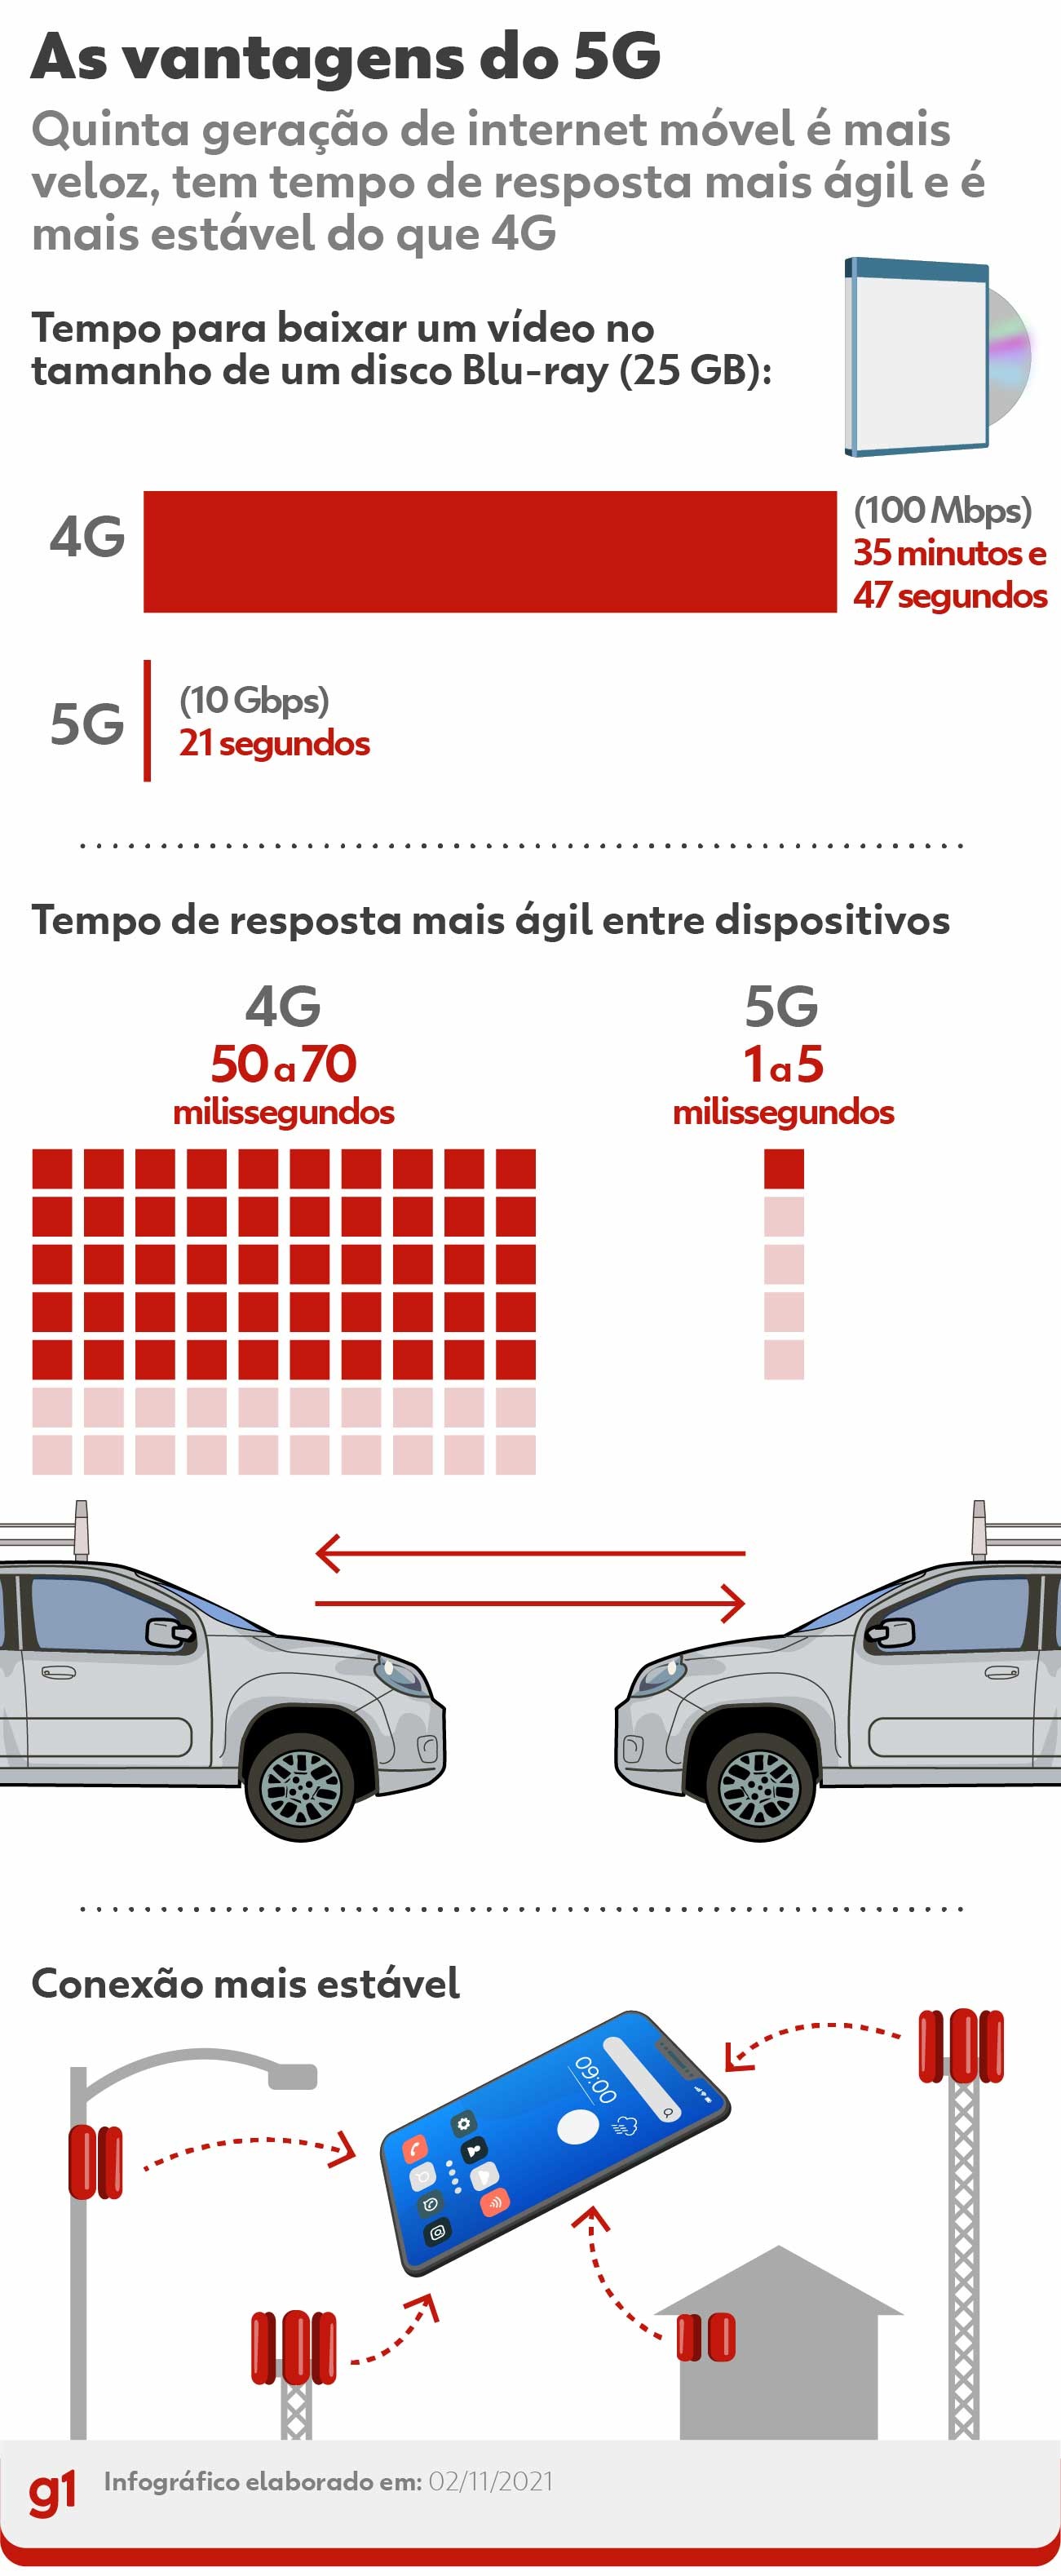 5G é liberado em Curitiba: veja quais celulares podem receber o sinal e tire dúvidas sobre a tecnologia